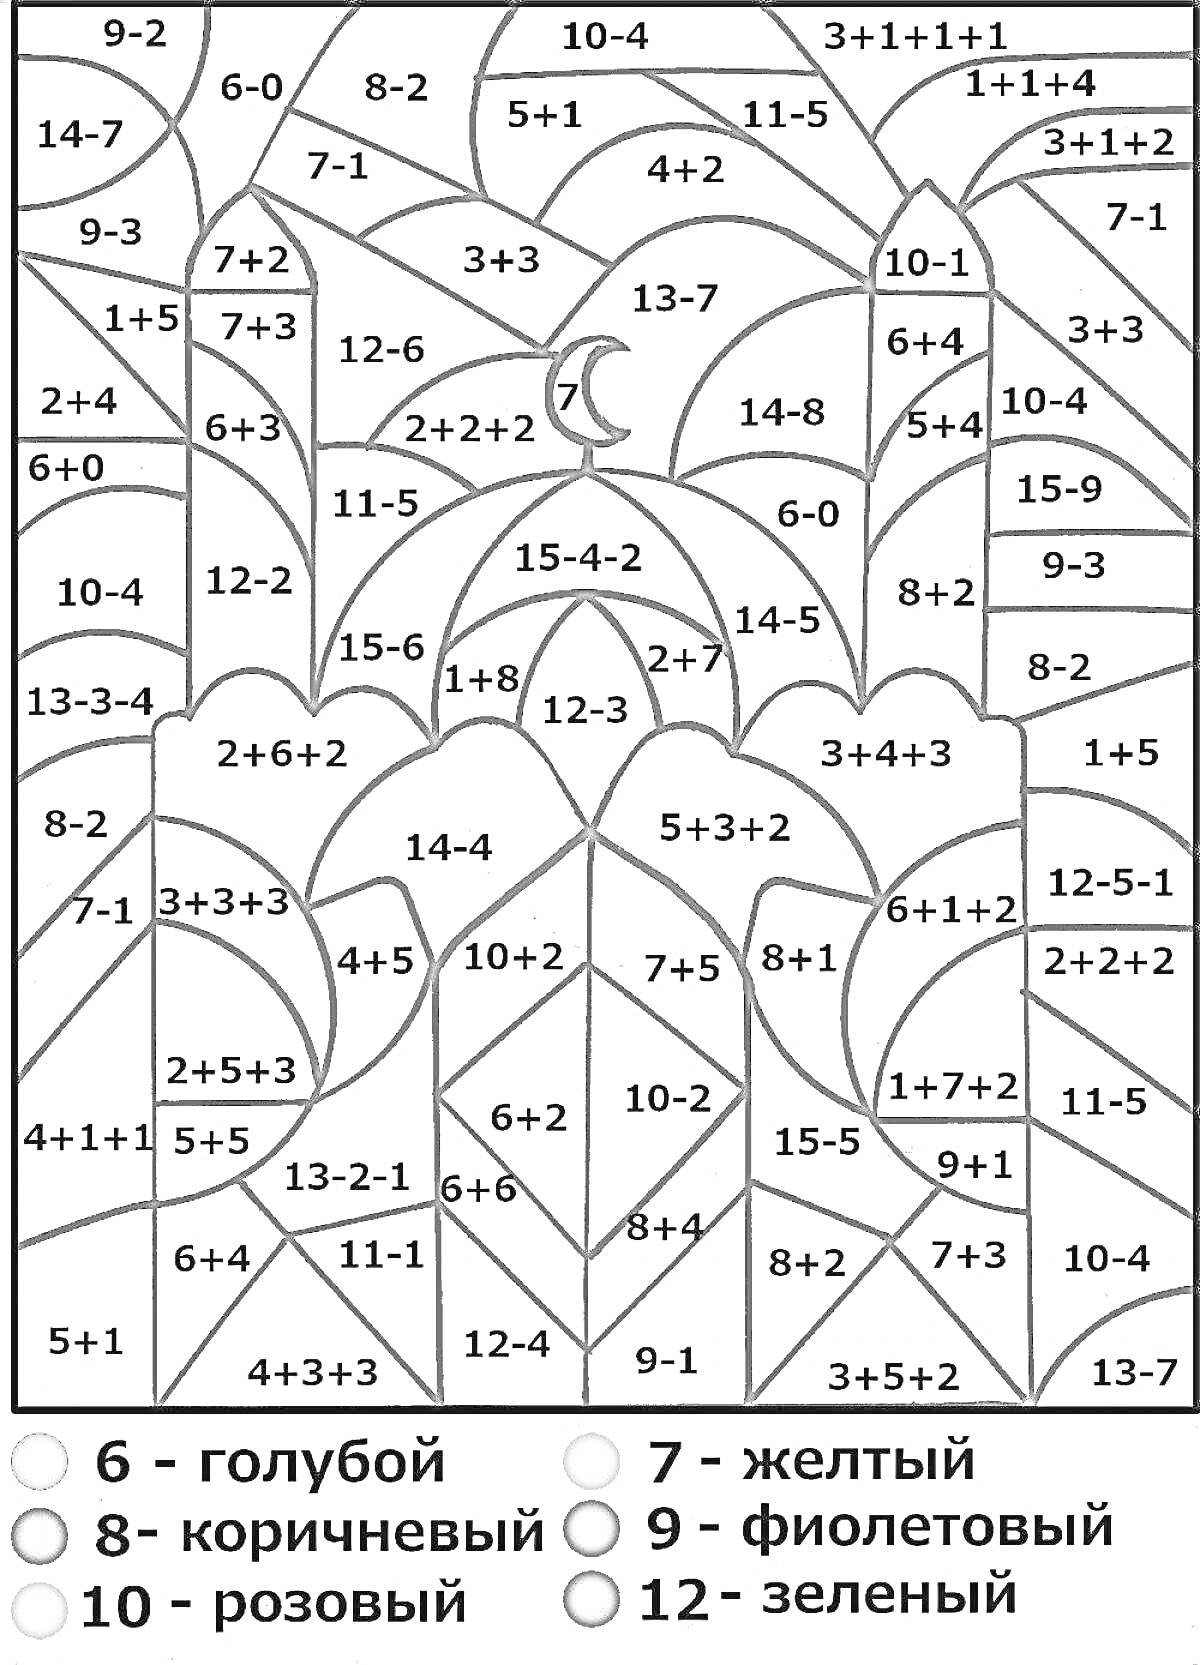 Картина по номерам с математическими примерами